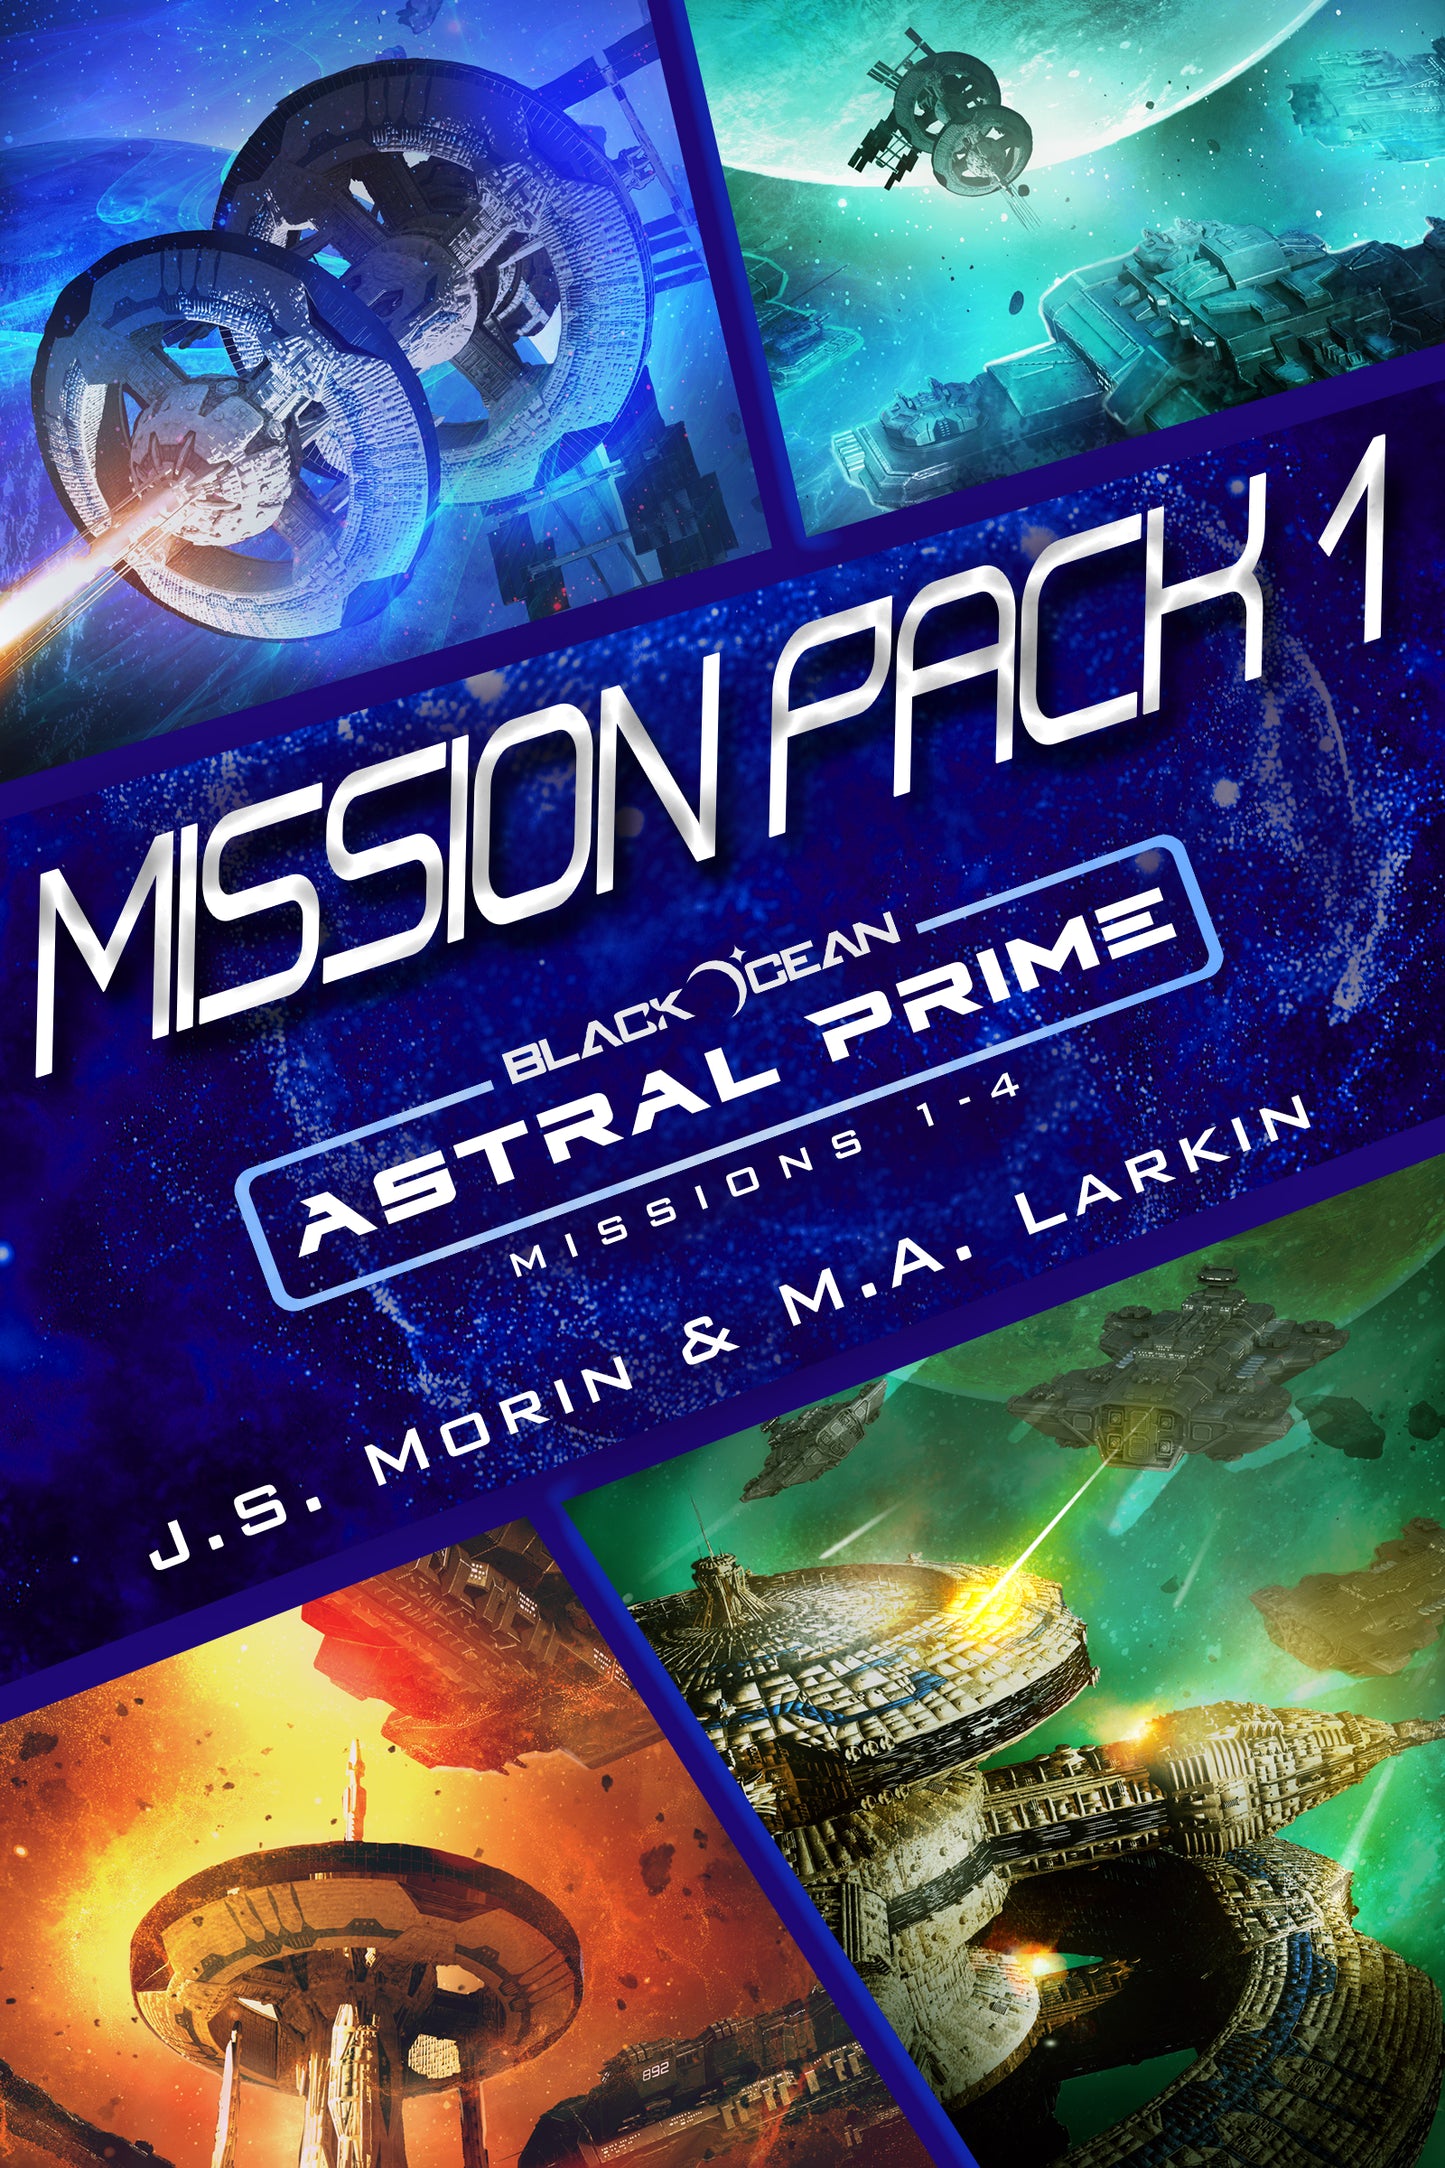 Black Ocean: Astral Prime Mission Pack 1, Missions 1-4